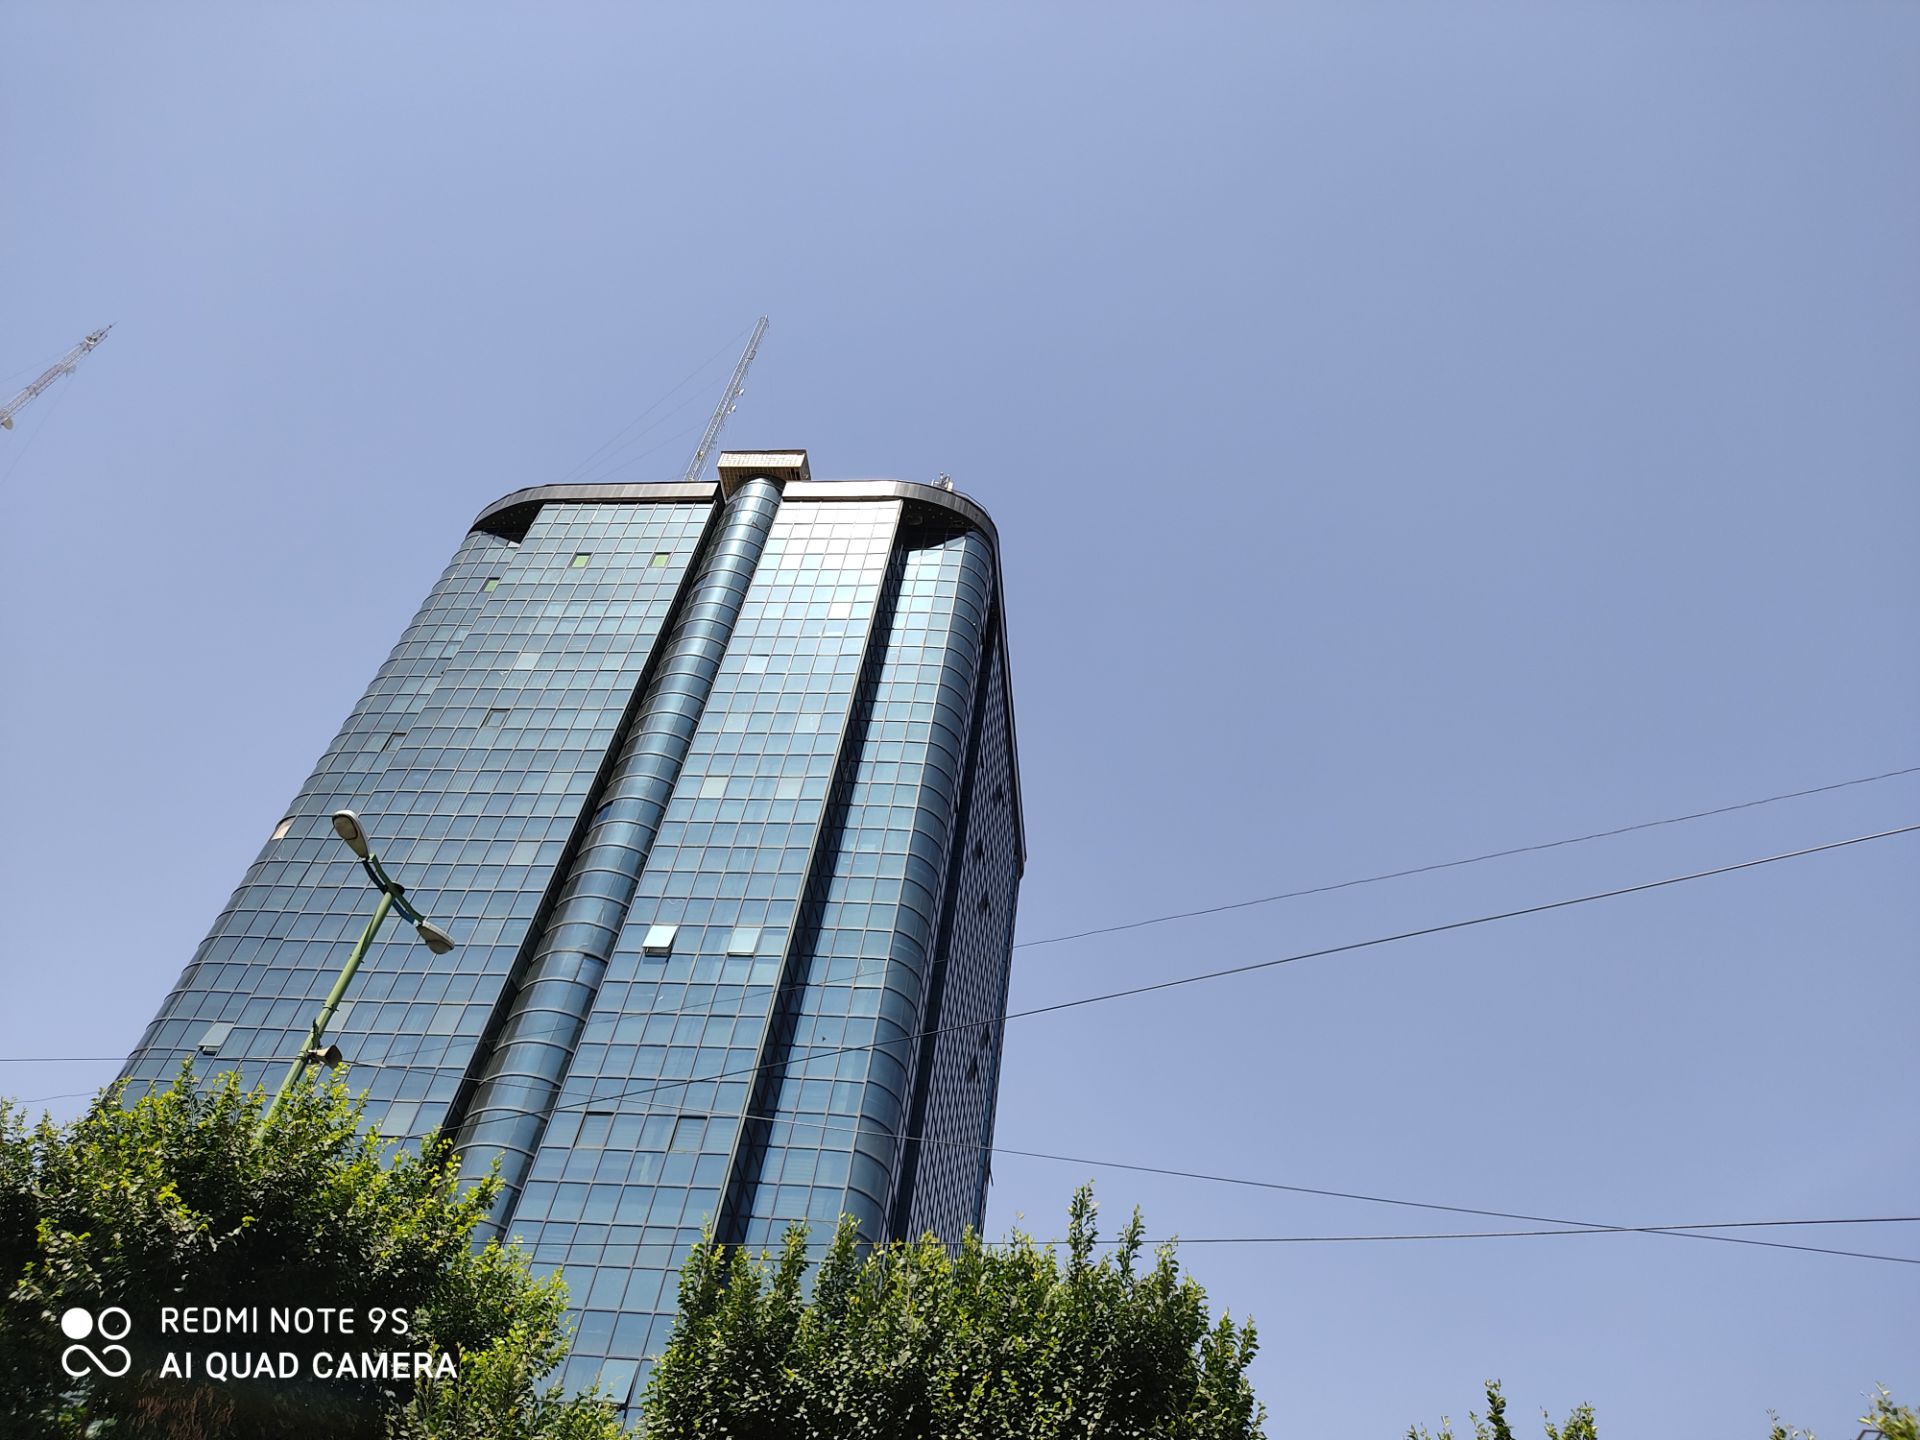 نمونه عکس ردمی نوت 9 اس - نمای ساختمان بلند